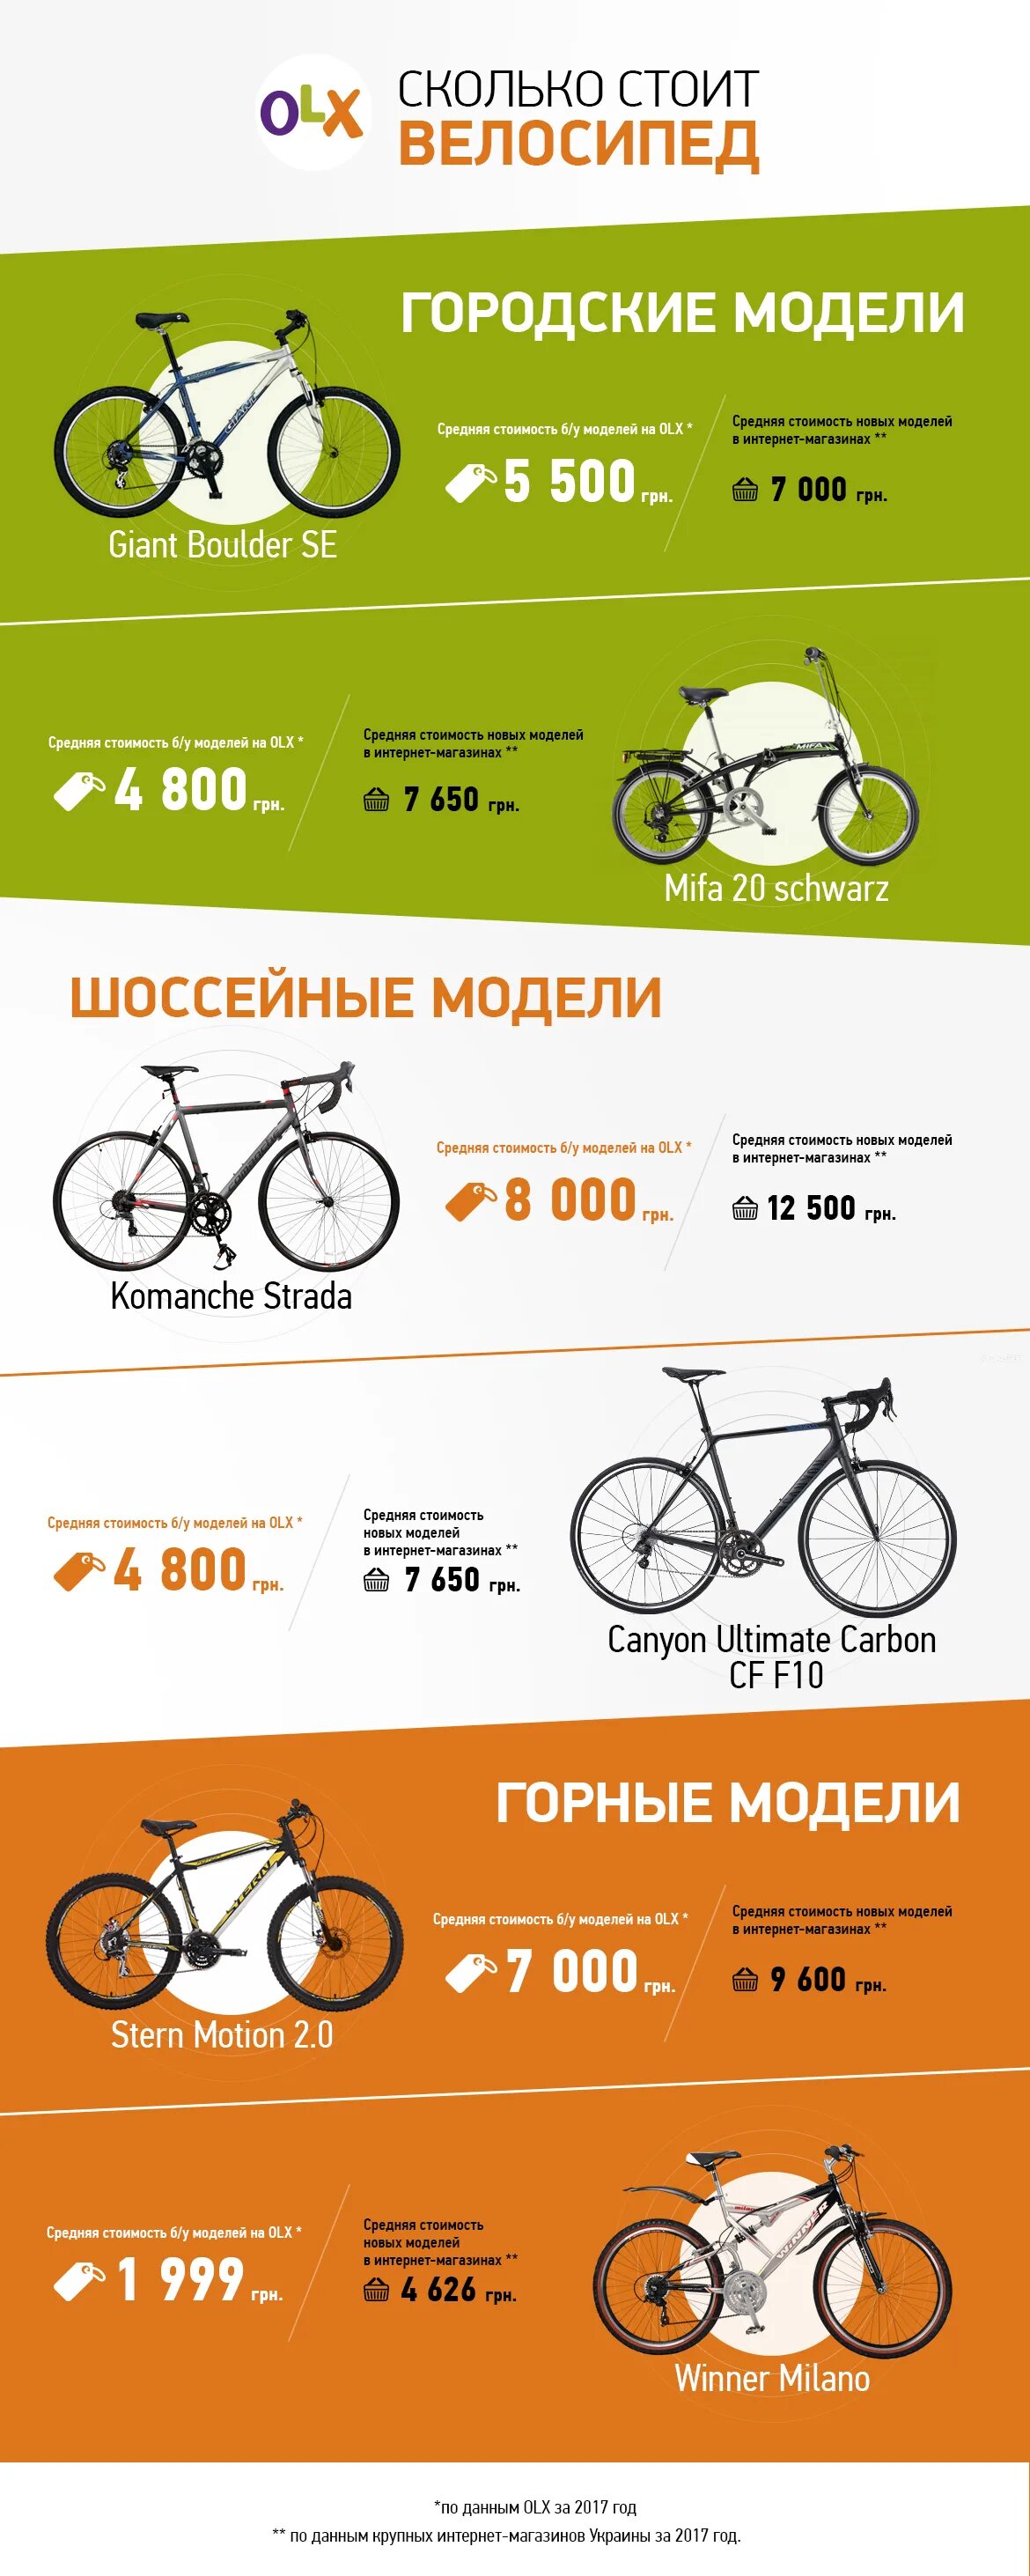 Велосипед сколько. Велосипед в транспортной компании. Отправить велосипед транспортной компанией. Отправка велосипеда транспортной компанией.